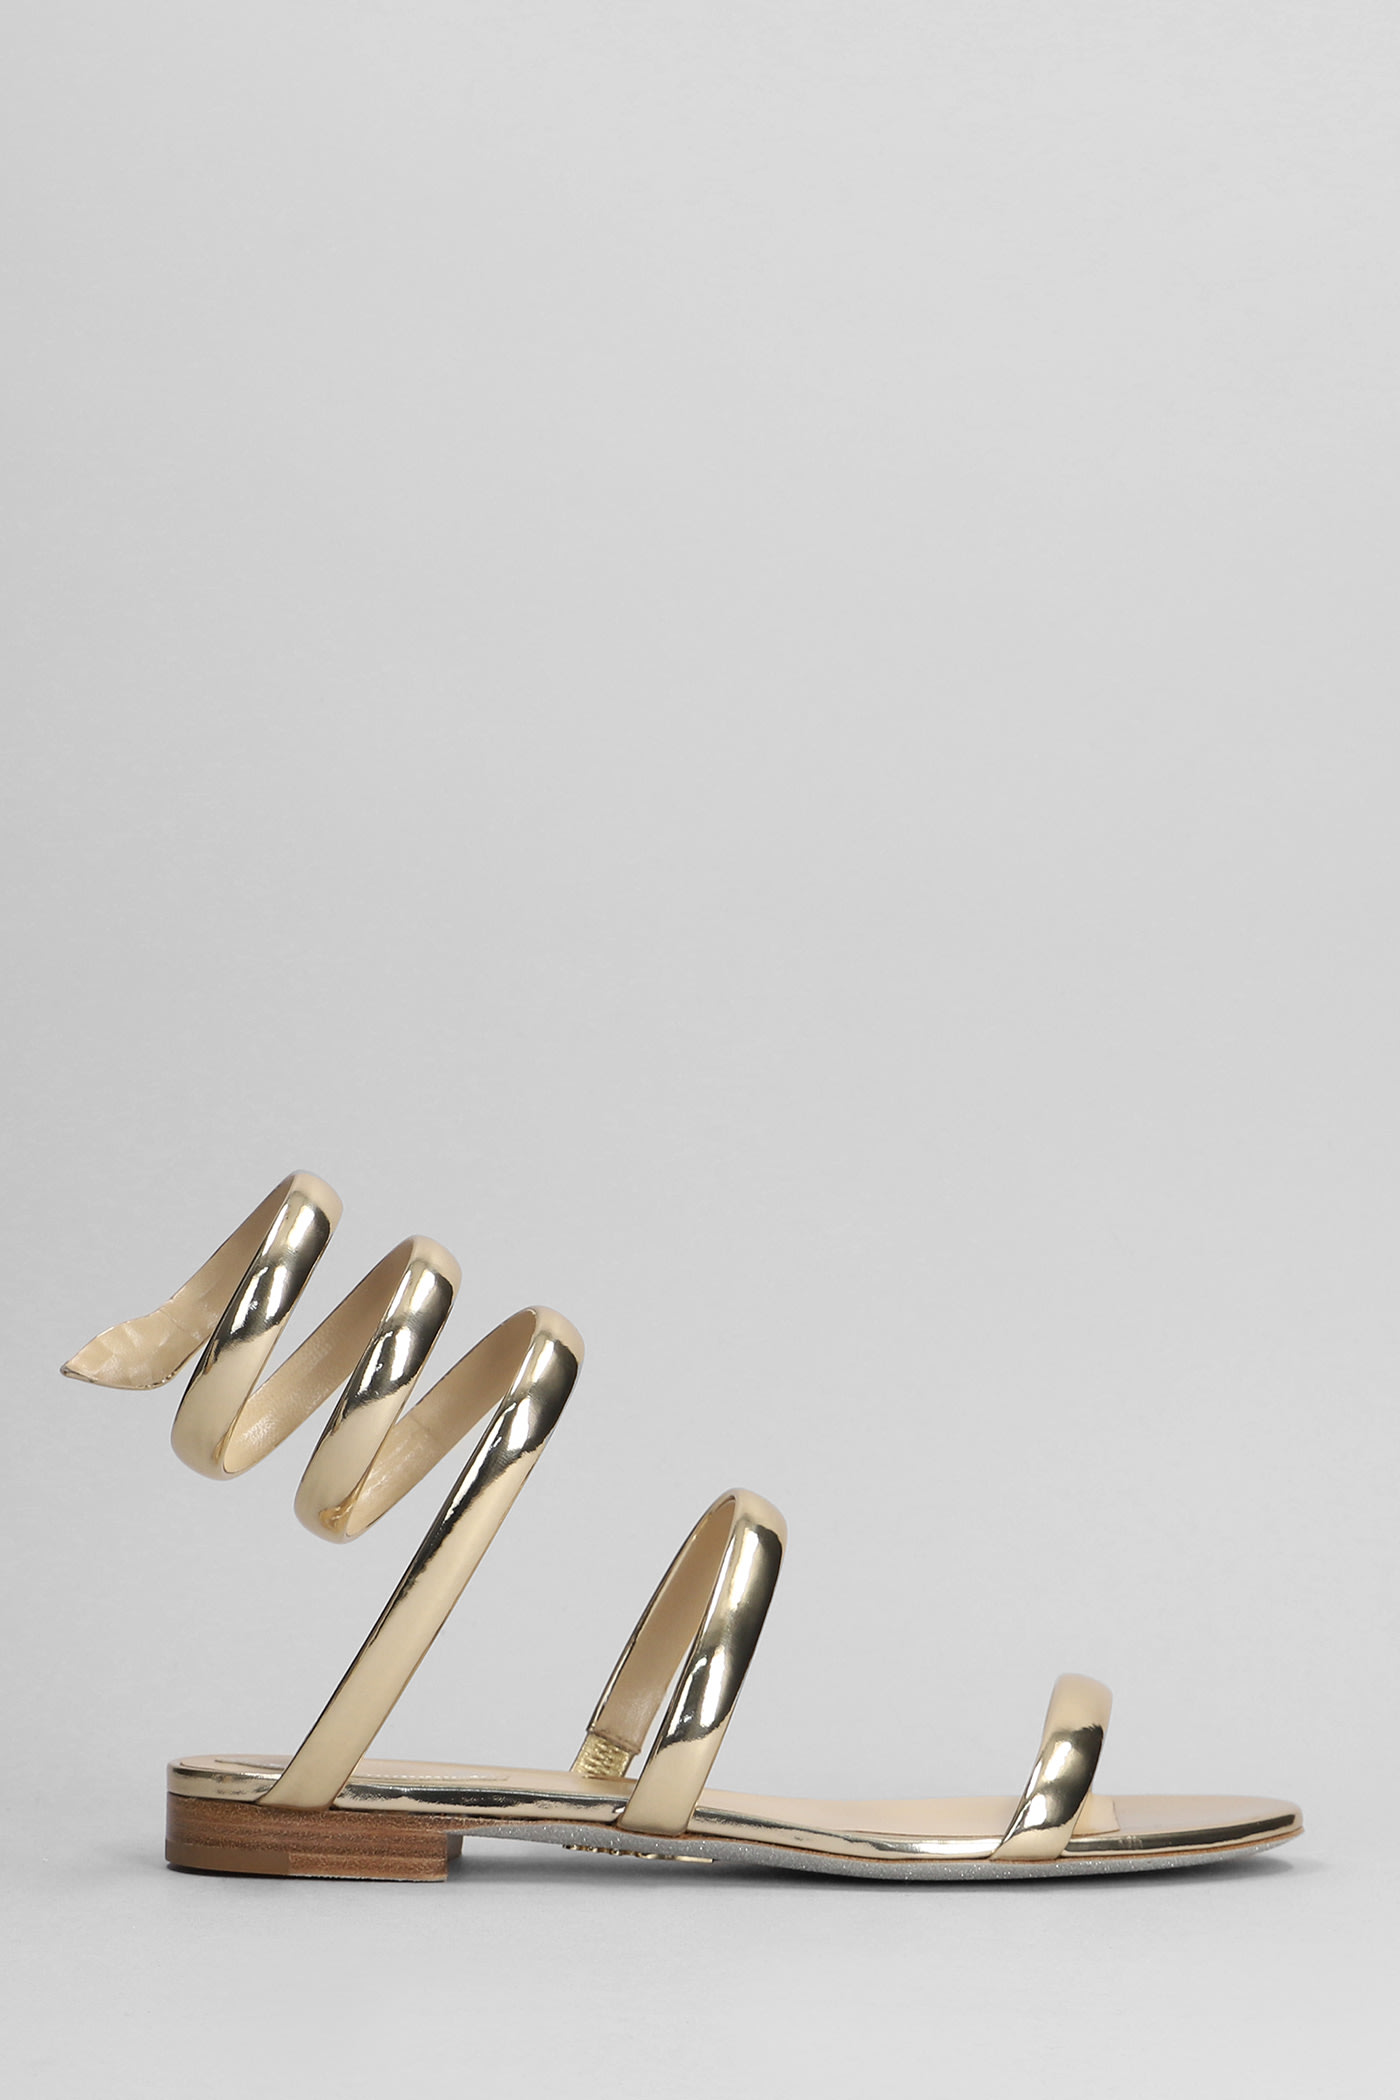 René Caovilla Serpente Flats In Gold Leather